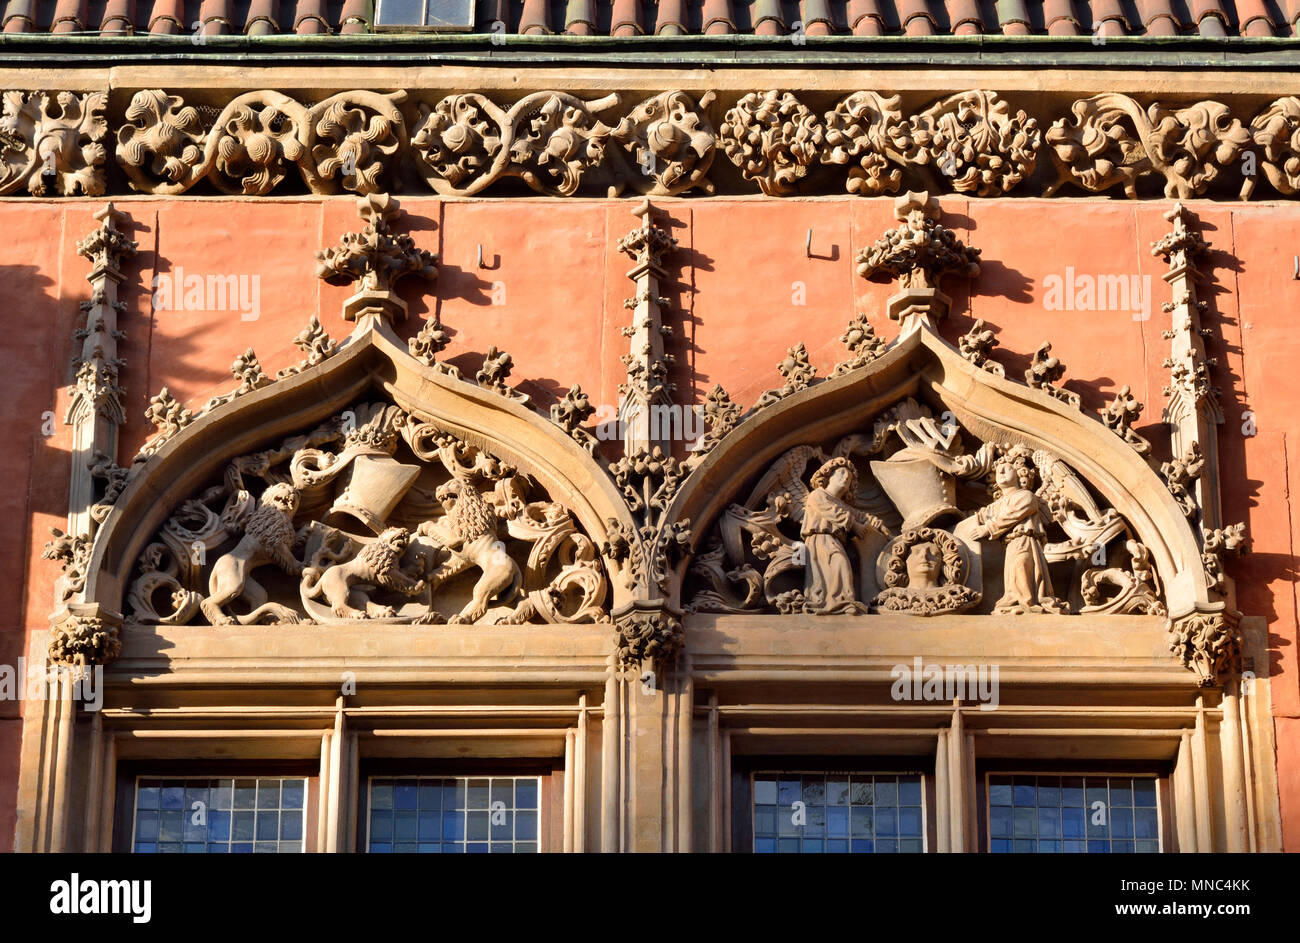 Fenêtres de l'Ancien hôtel de ville gothique (Ratusz) à la place du marché (Rynek). Wroclaw, Pologne Banque D'Images